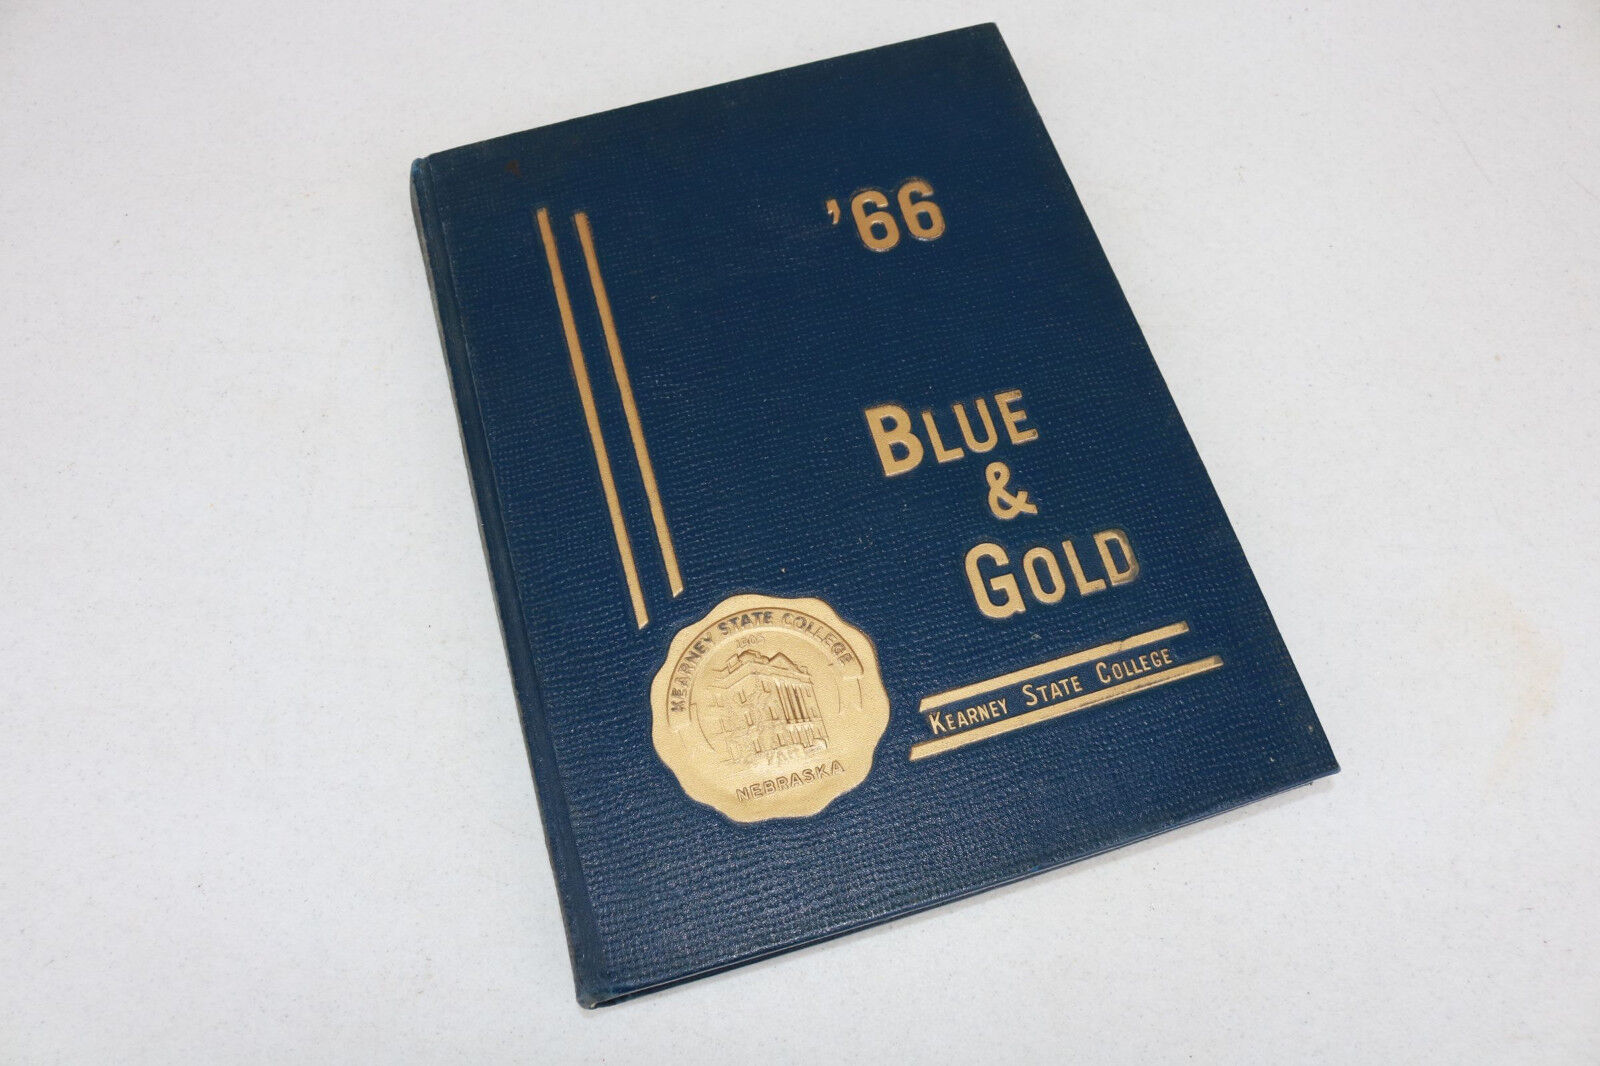 1966 66 Kearney State College Yearbook Kearney Nebraska The Blue & Gold HL